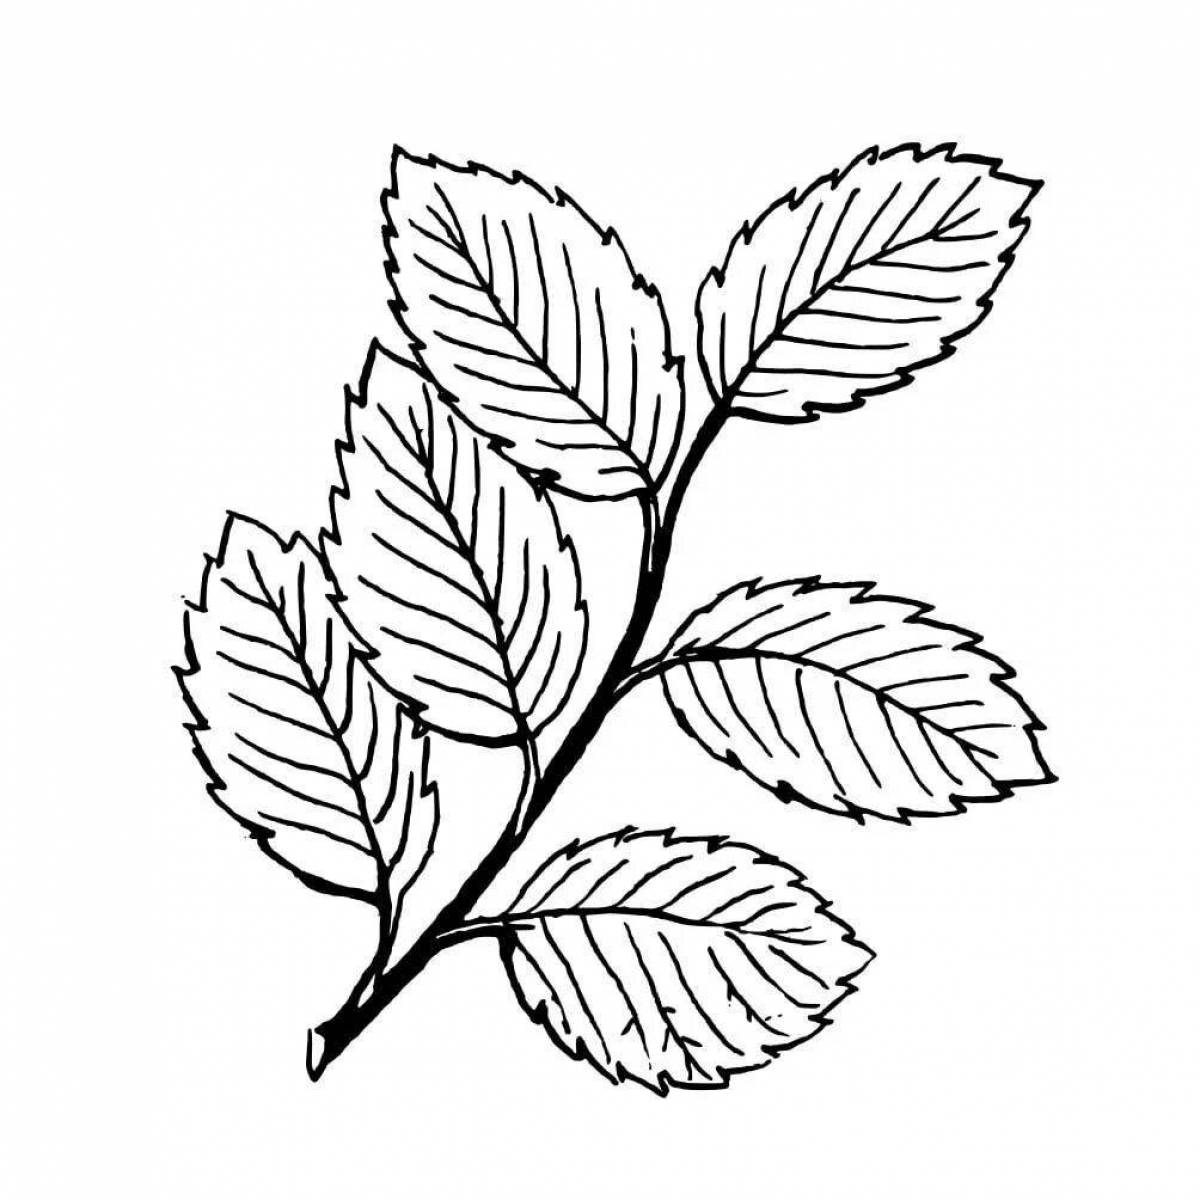 Восхитительная страница раскраски листьев рябины